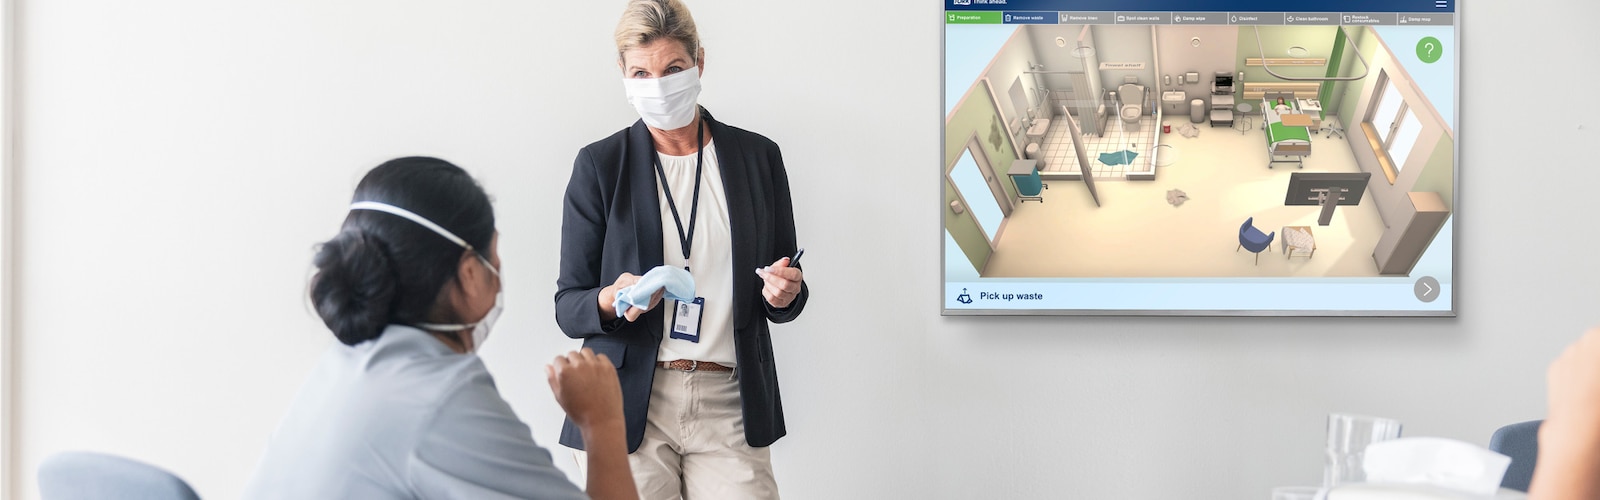 Tork interaktives Training für saubere Krankenhäuser 